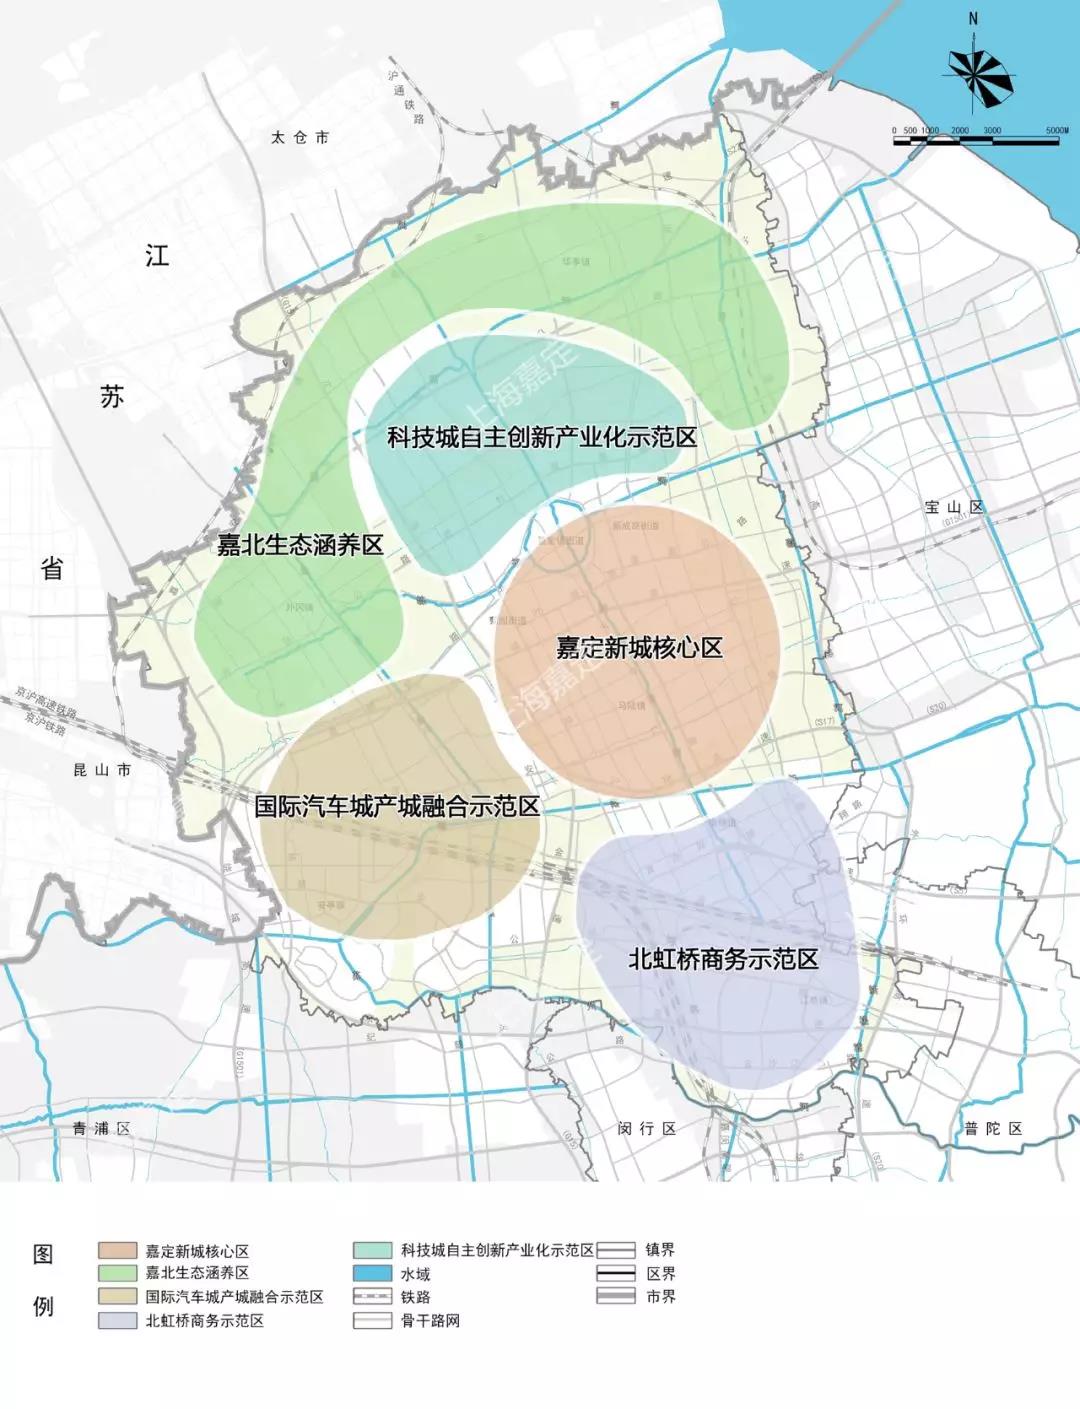 上图来源于《上海市嘉定区总体规划暨土地利用总体规划(2017